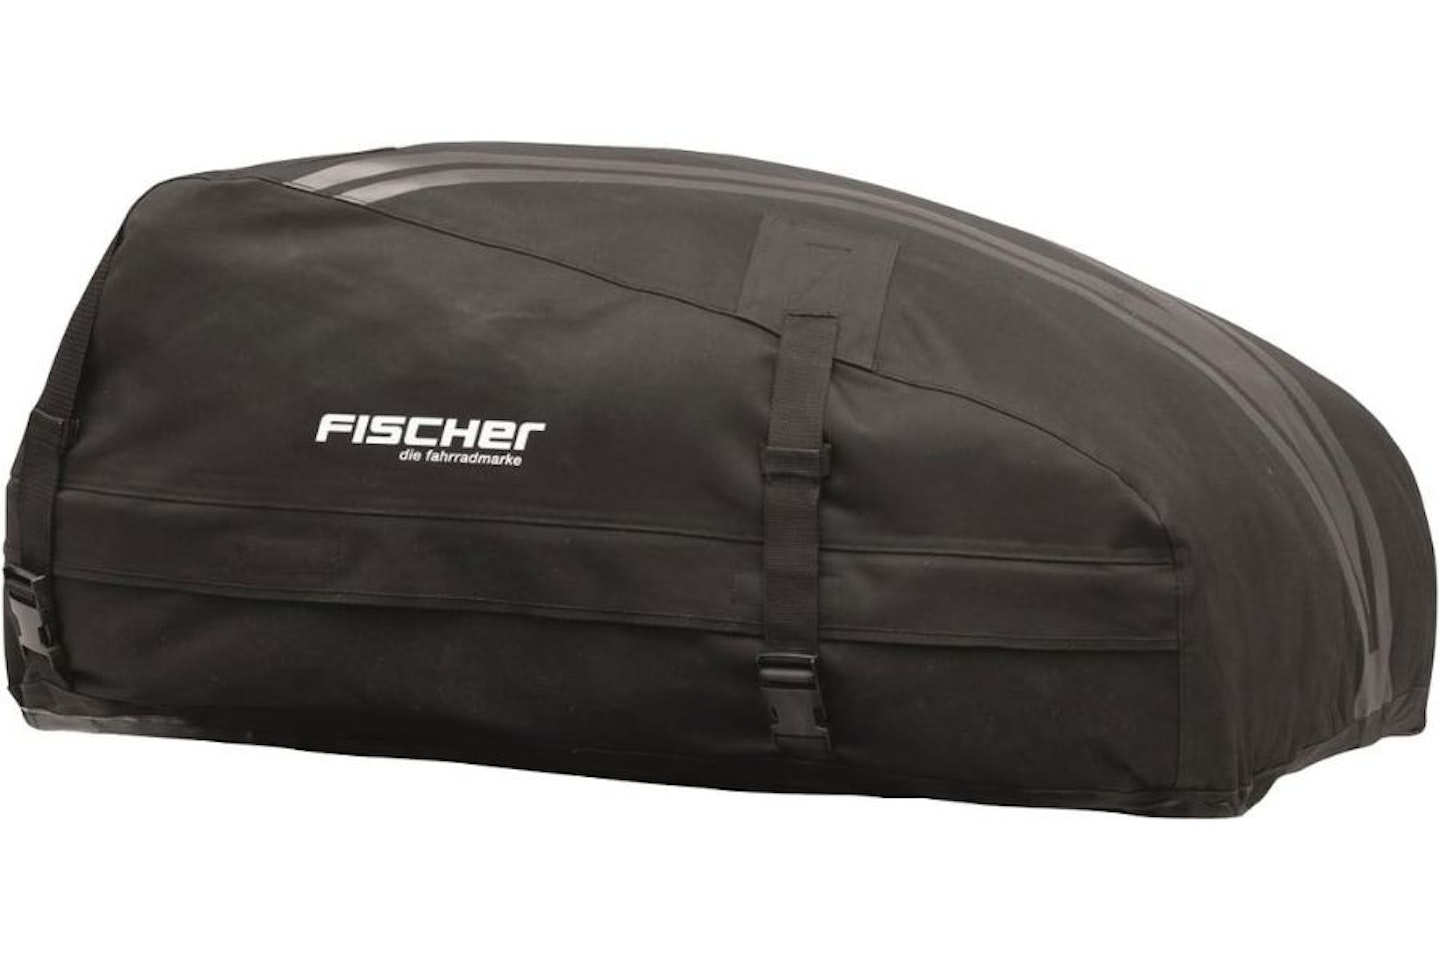 Fishcer 126000 Roof Bag